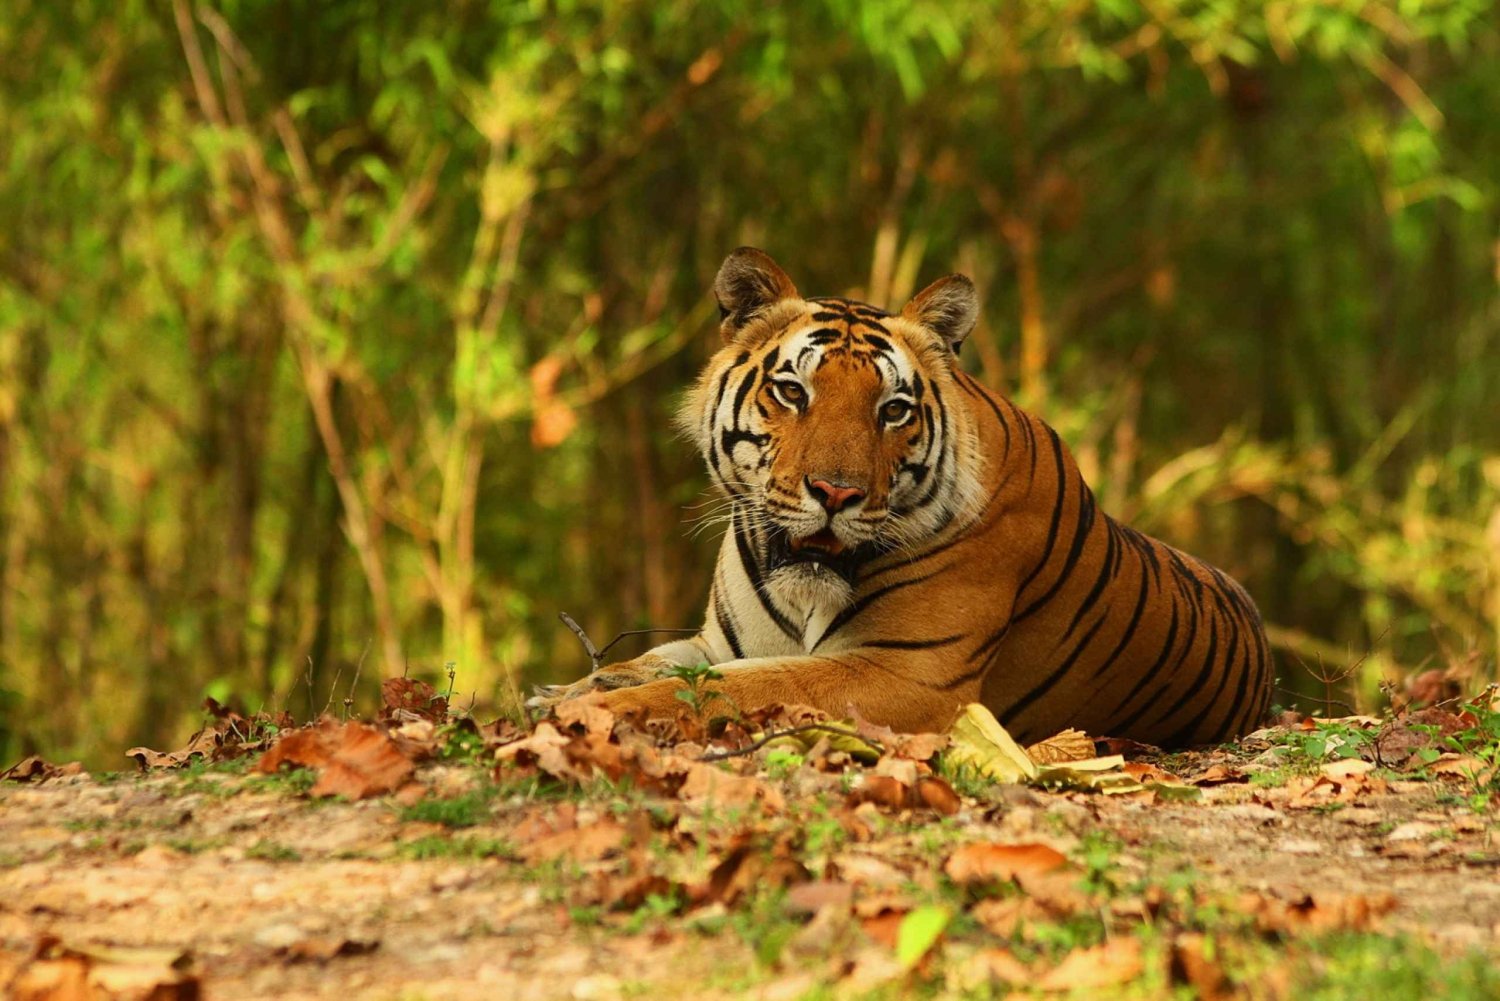 Safari en canoa: Entrada sin esperas a la Reserva del Tigre de Ranthambore